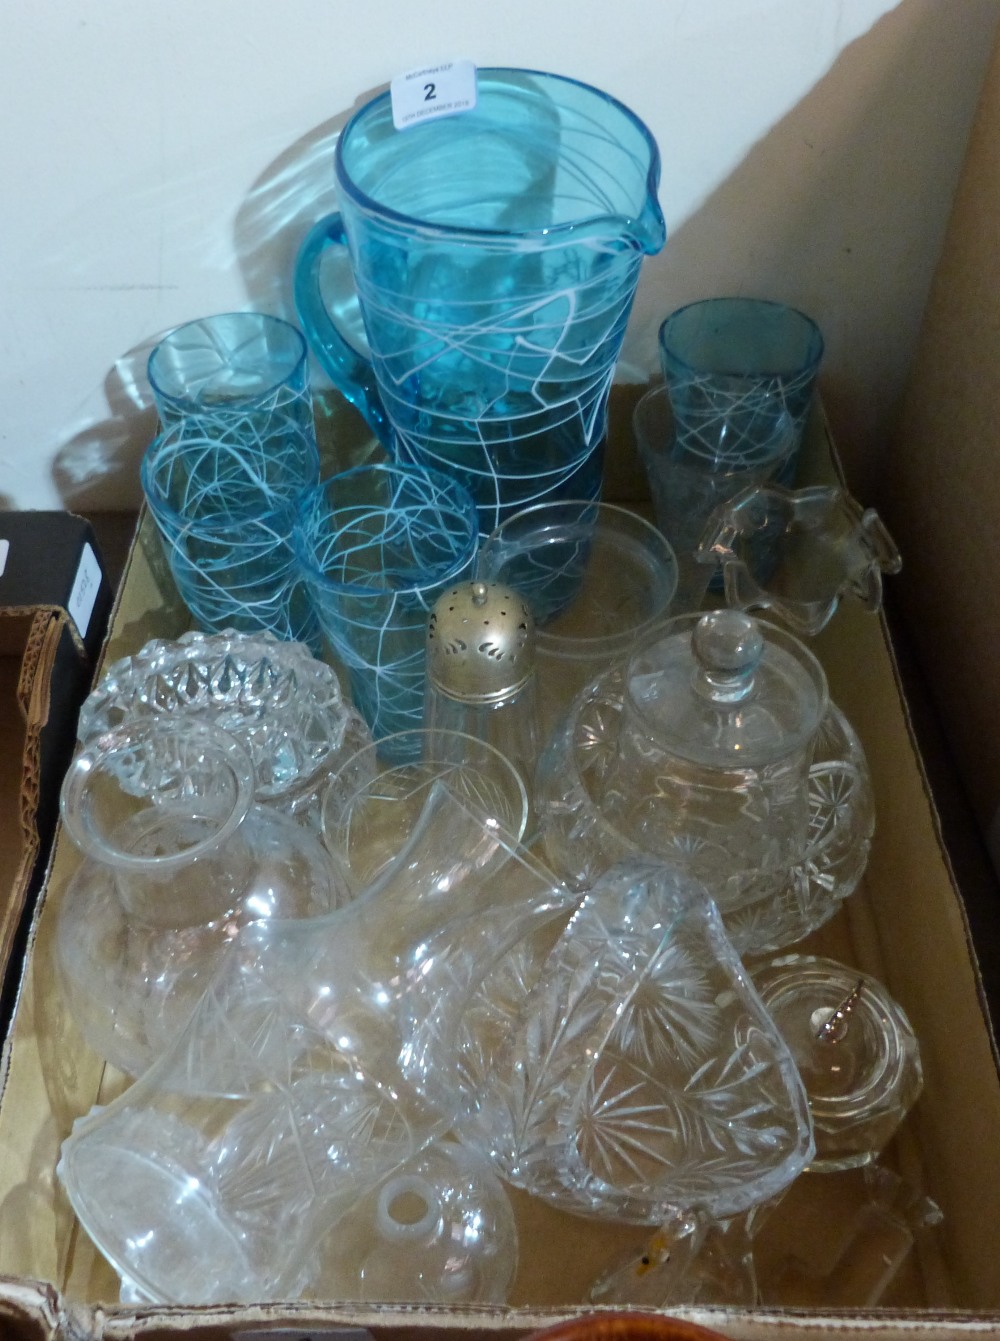 A box of glassware